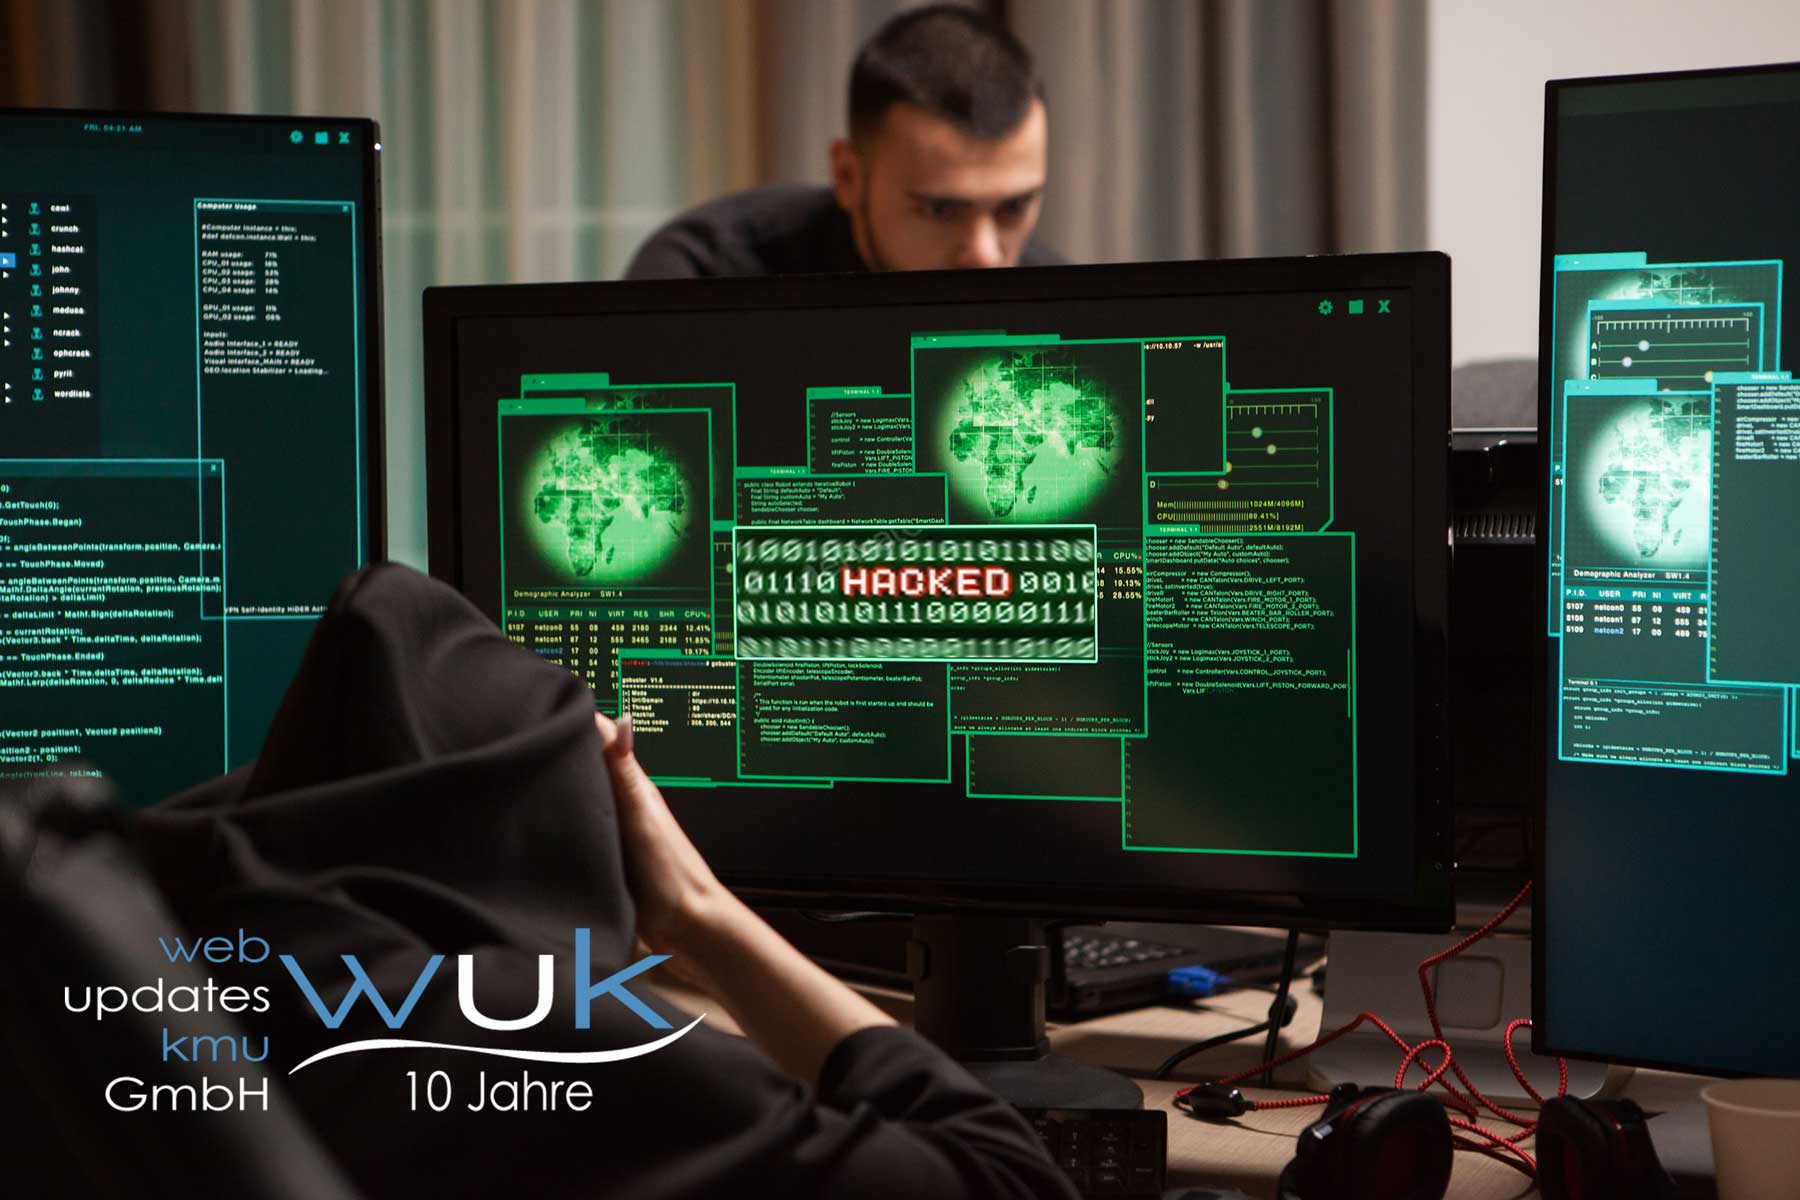 web_updates_kmu_wuk_webagentur_fuer_wordpress_netzwerk-speicherplatz-backups-cyber-hacker